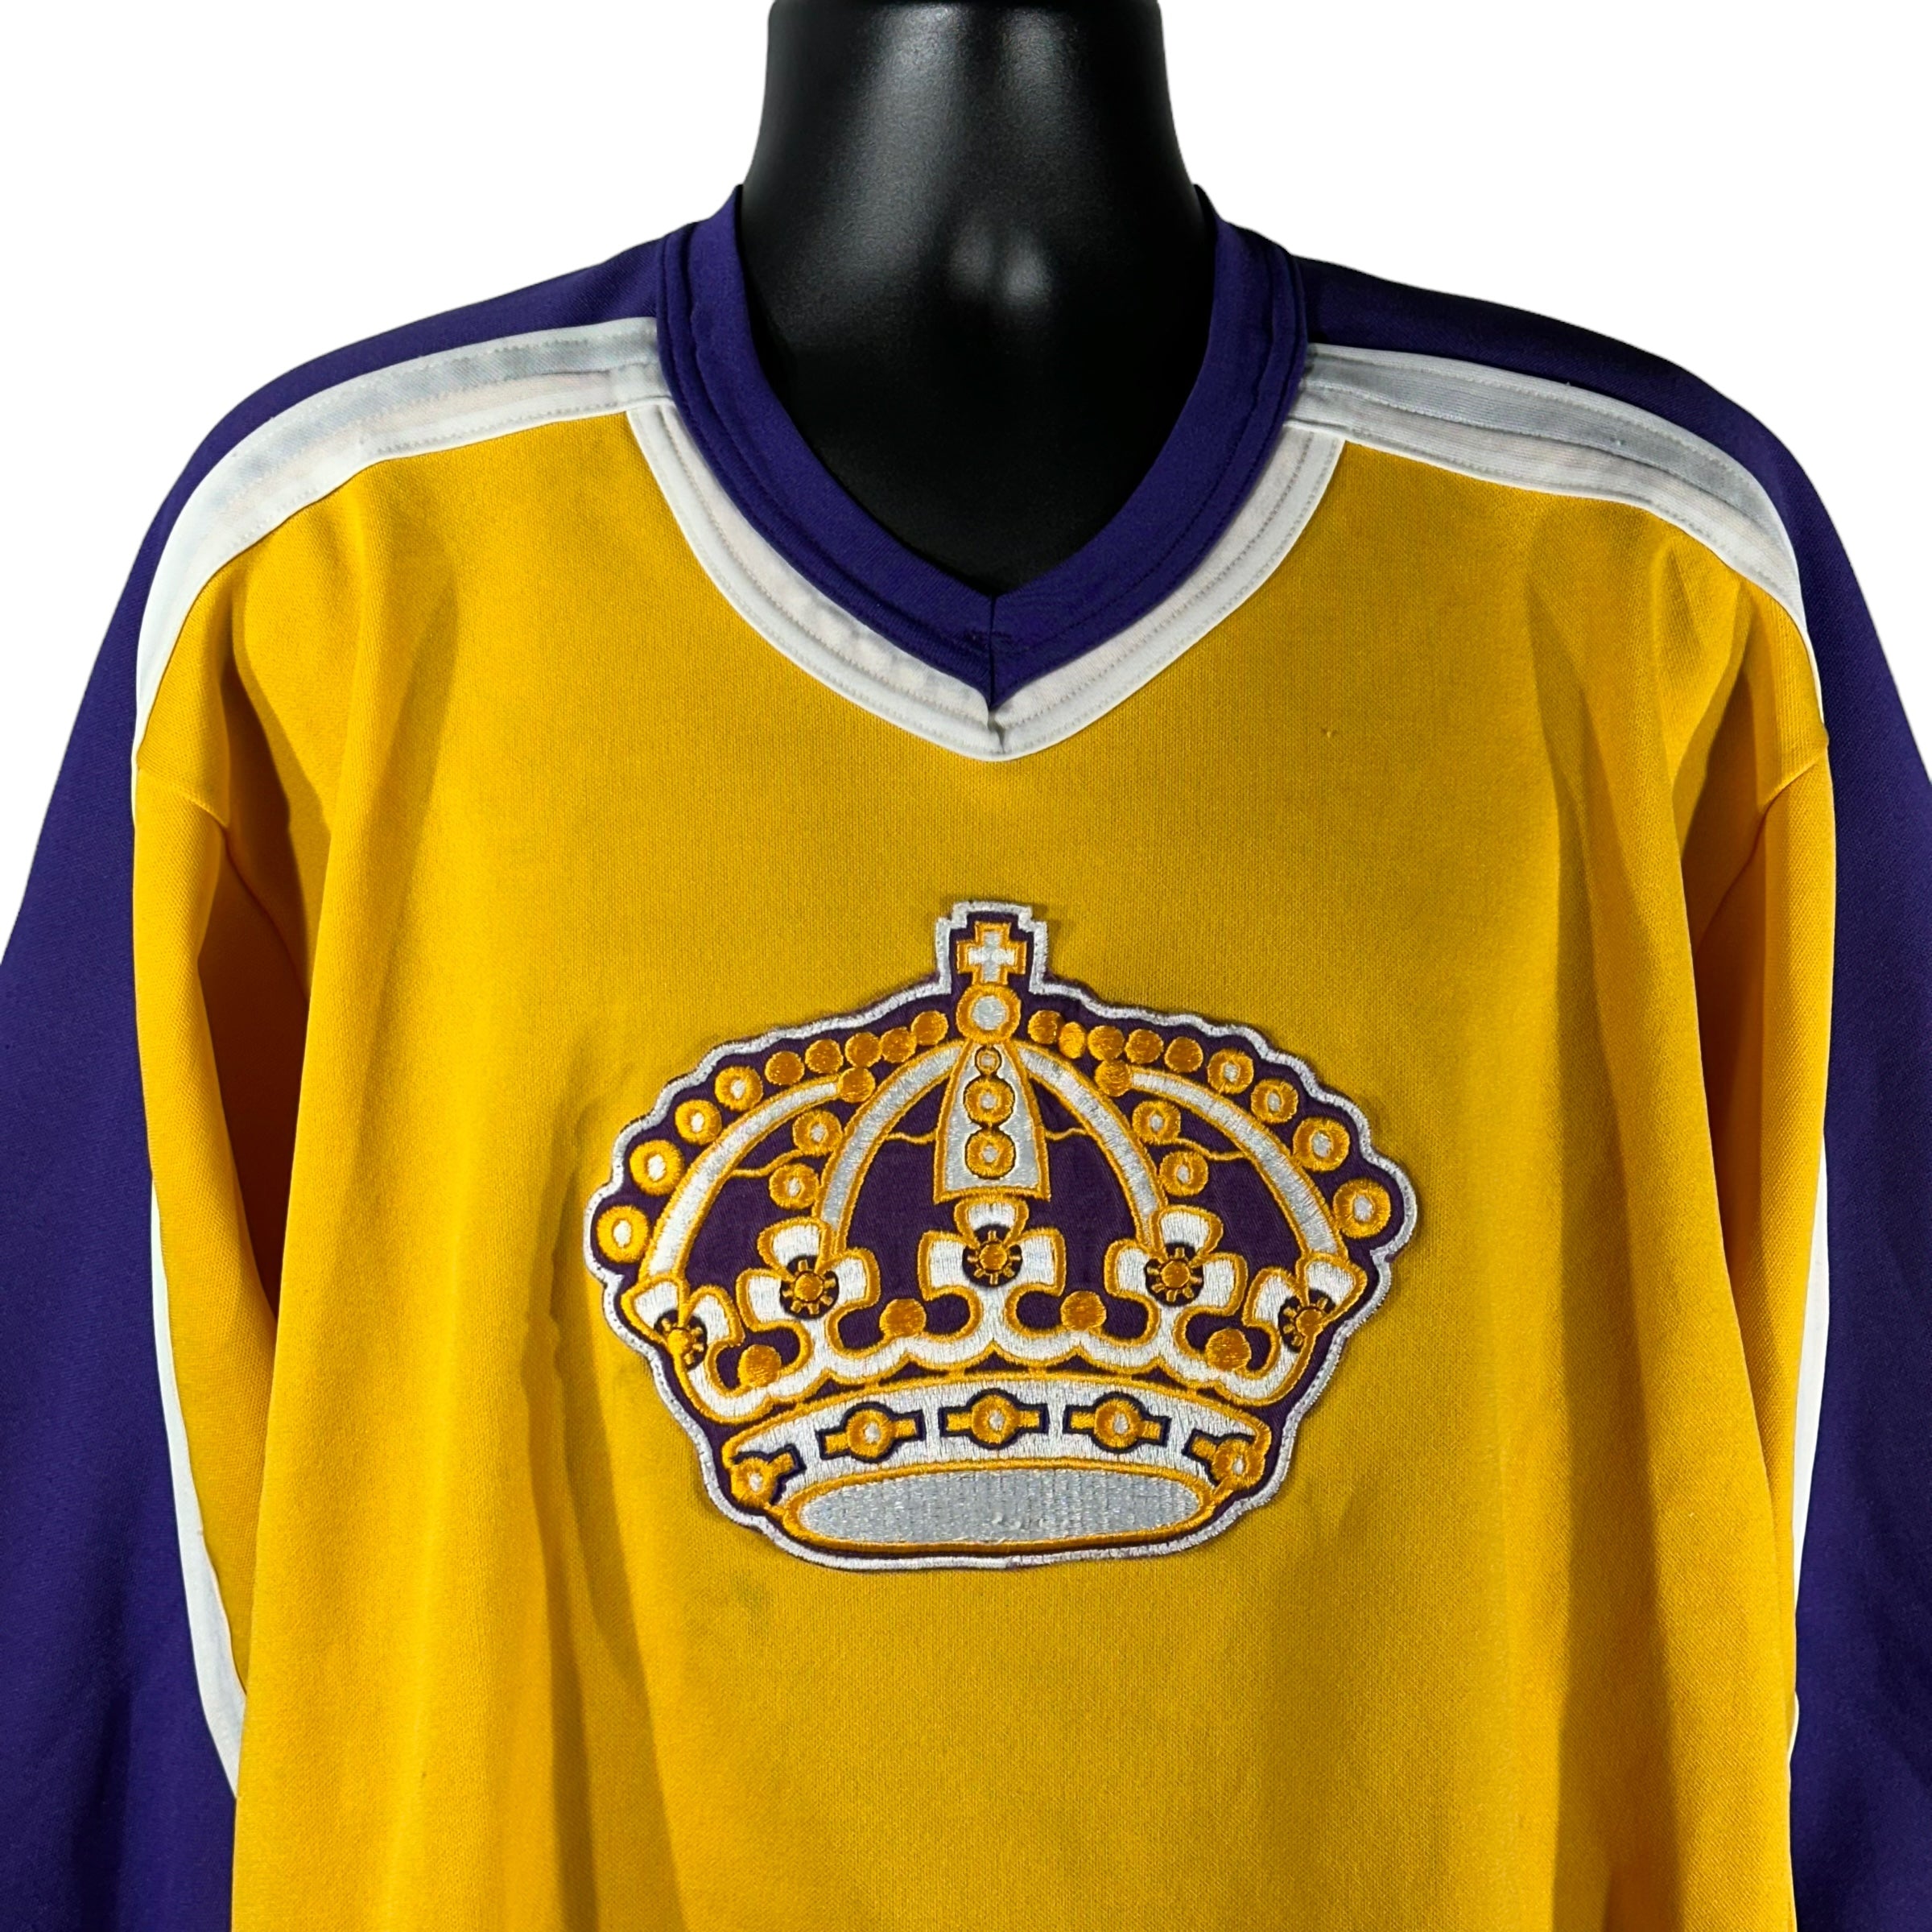 Vintage Los Angeles Kings Hockey Jersey